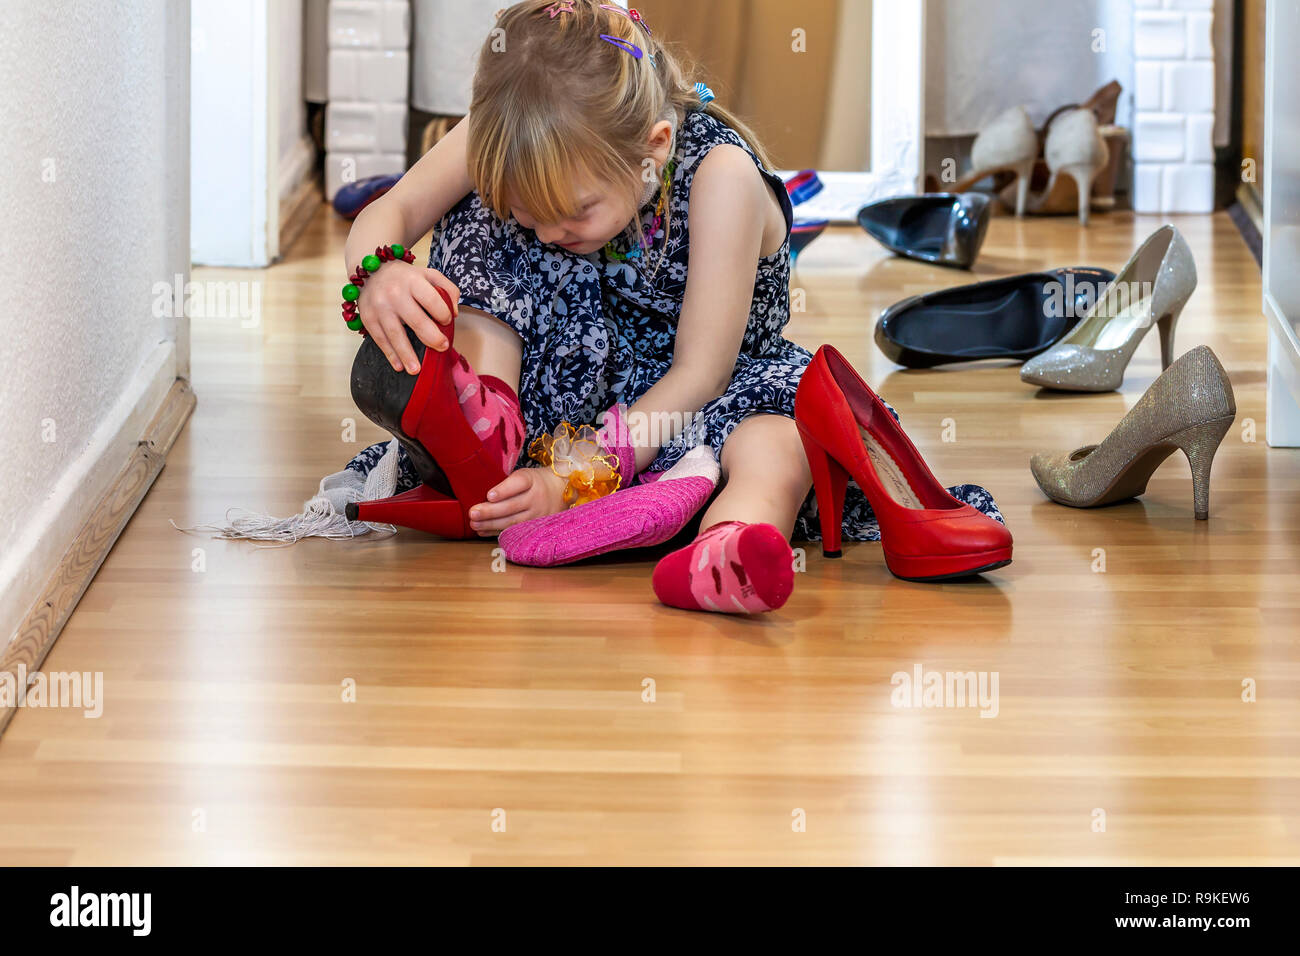 La niña mide los zapatos de la madre con tacones: fotografía de